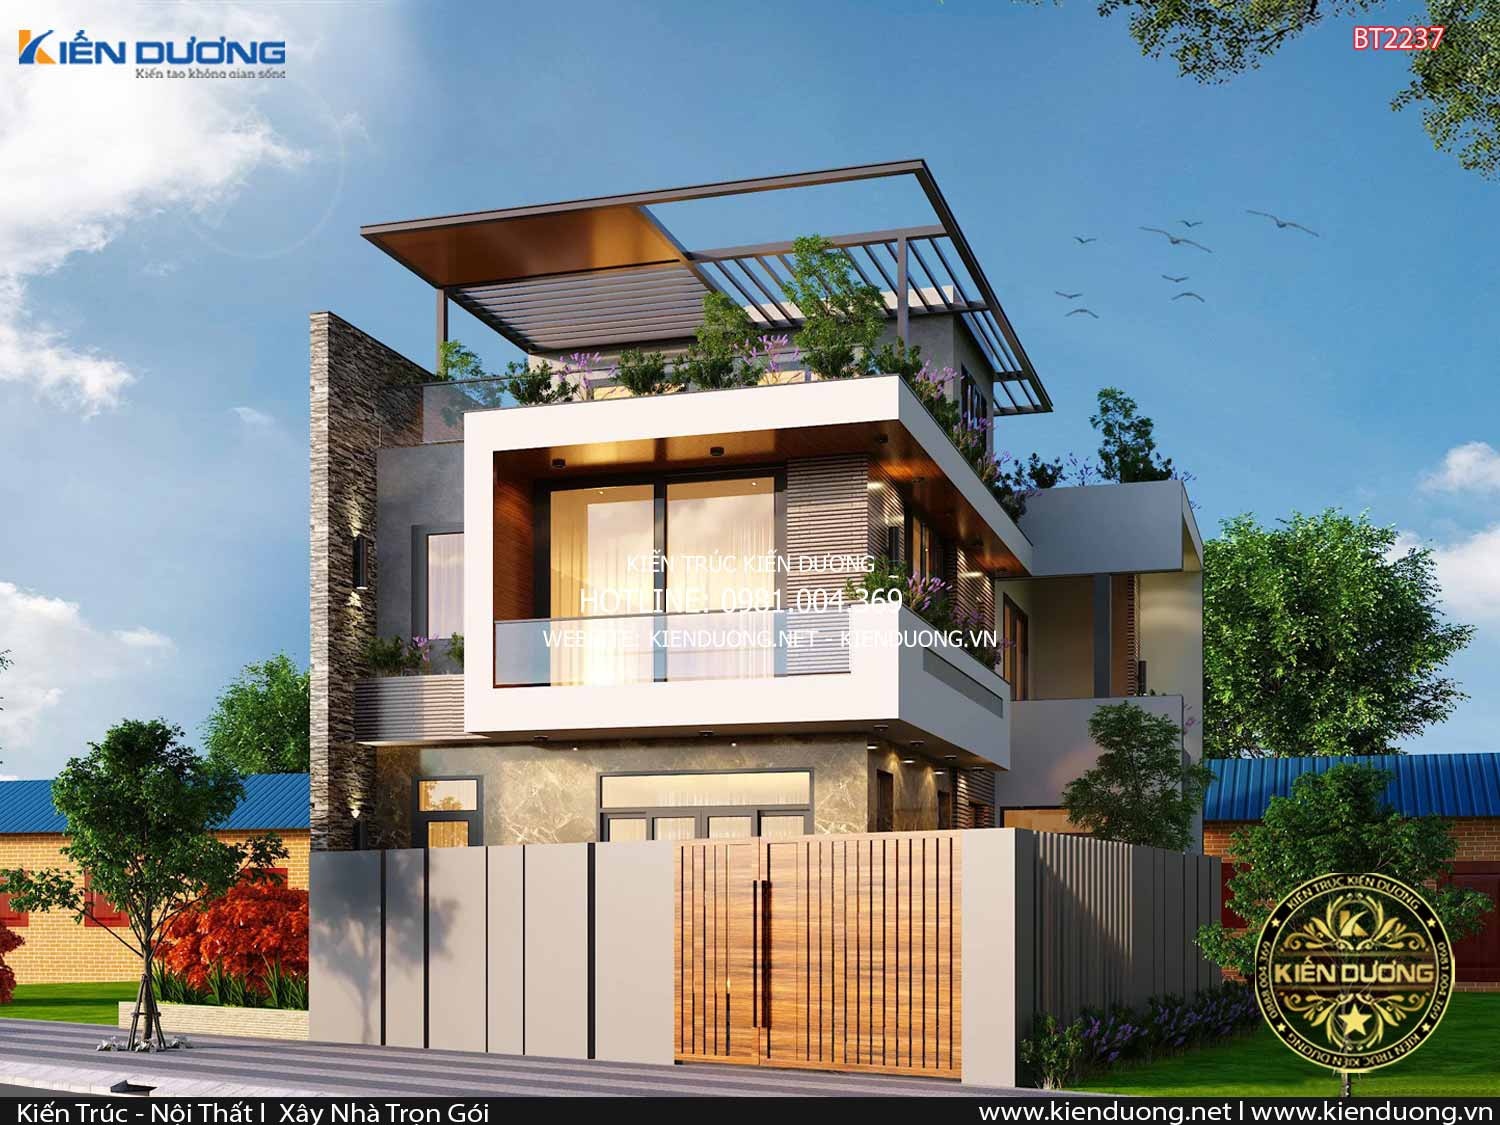 Thiết kế nhà 2 tầng 1 tum đẹp tại Hà Nội BT2237